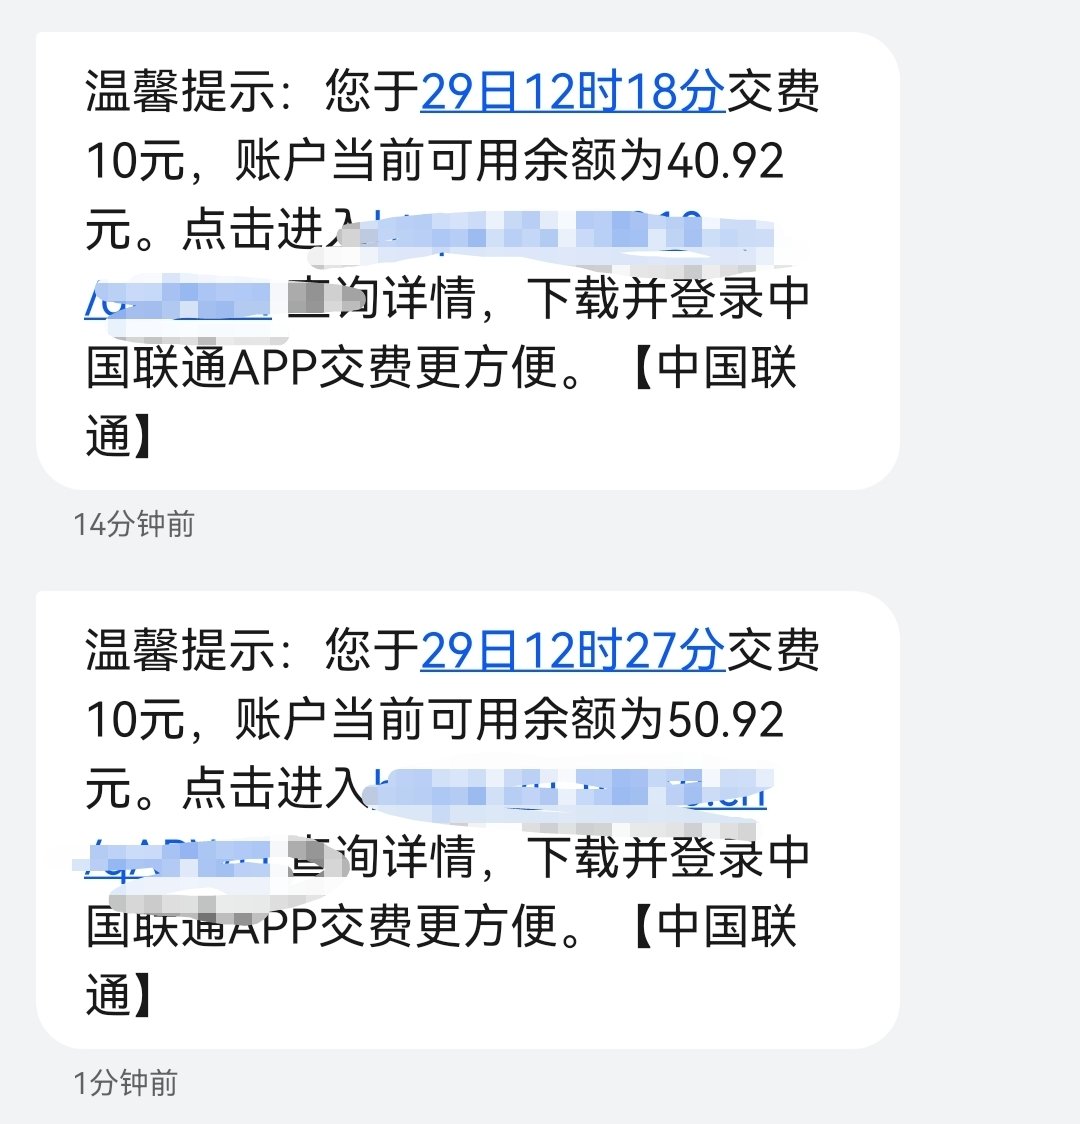 [自动充值]中国联通 手机话费充值 10元 快充直充 1